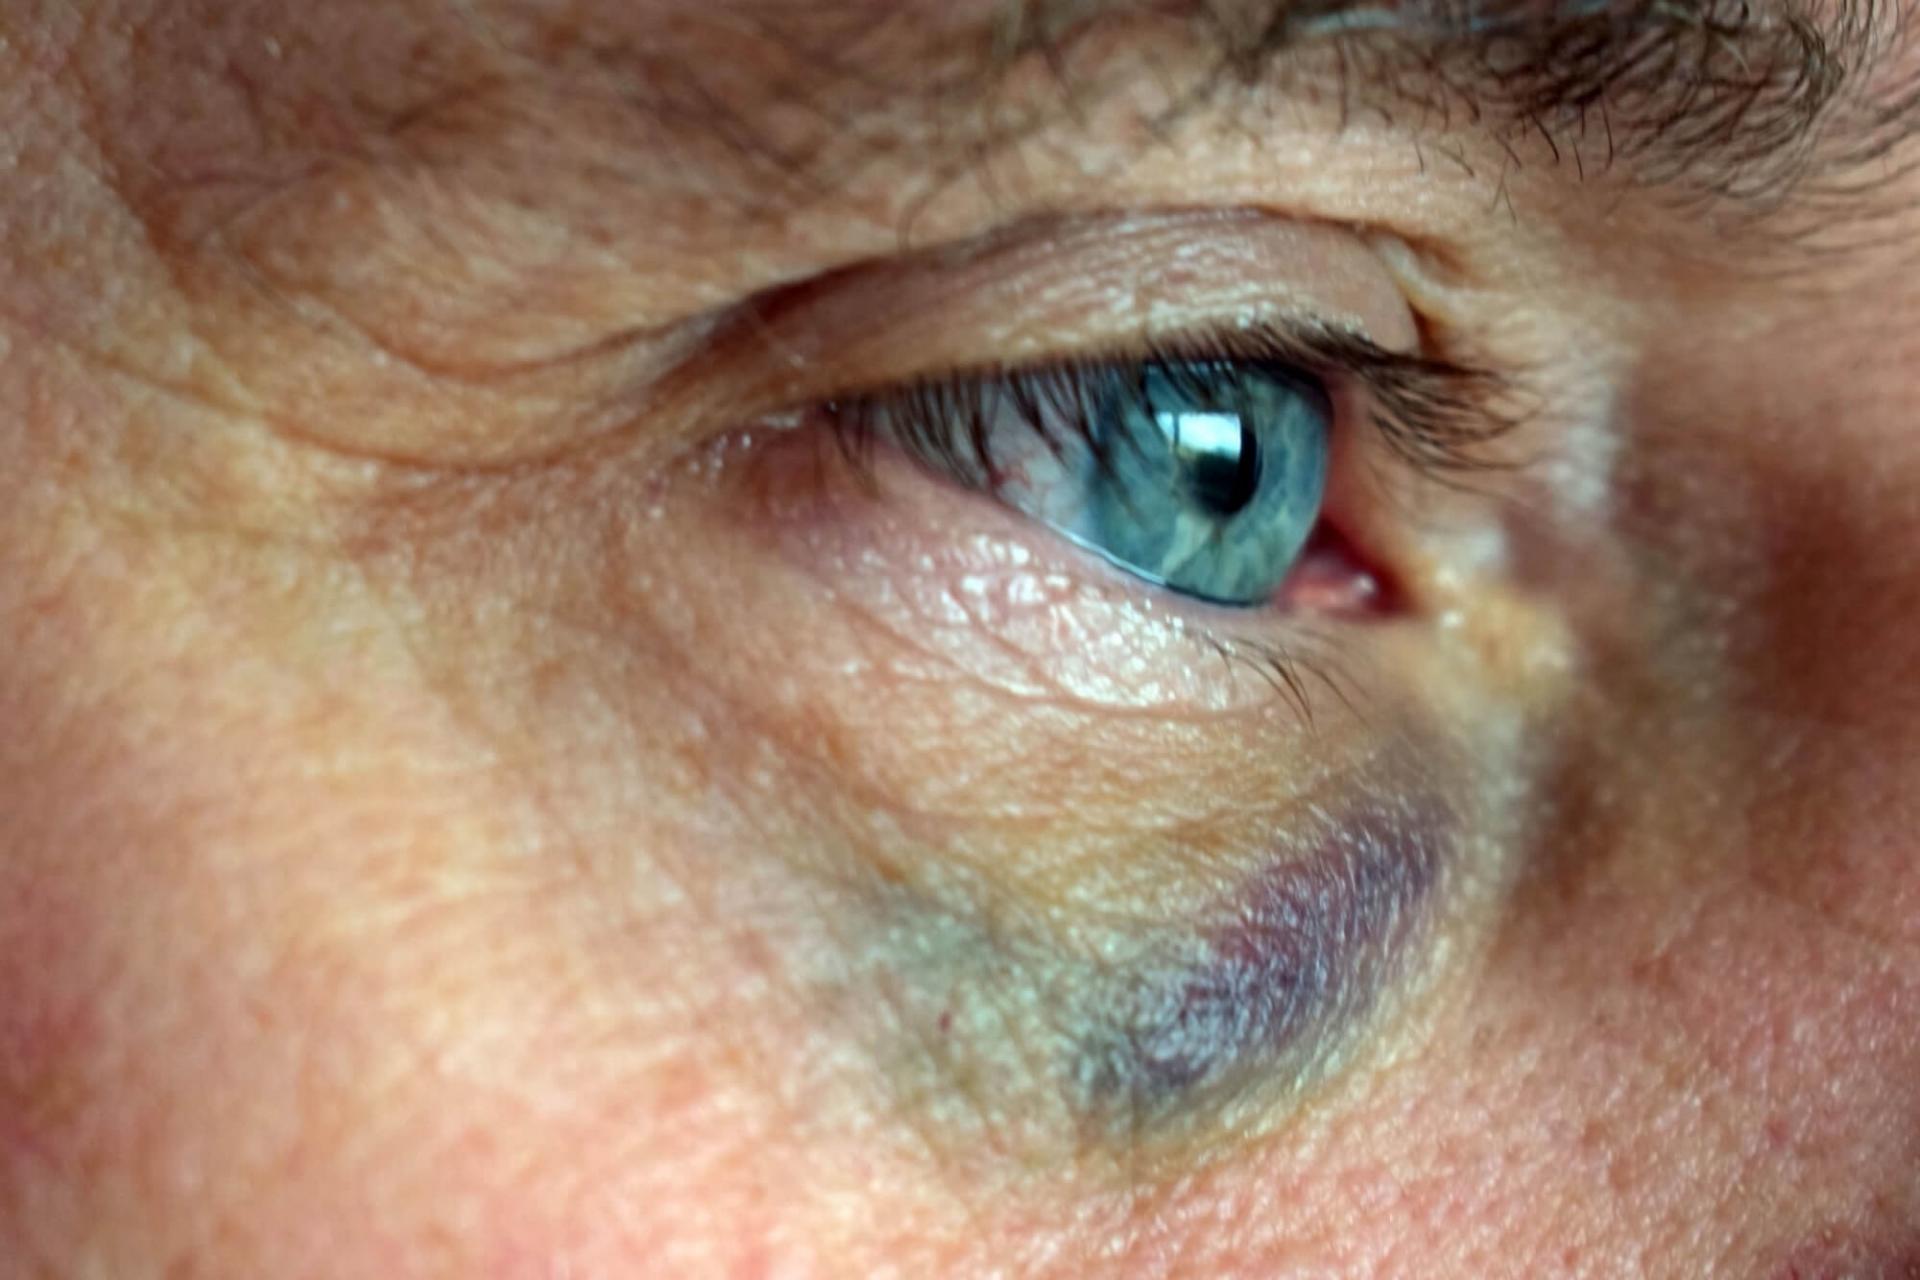 Efter et slag kan blodkar i øjet sprænge, og den hvide del af øjet (snehinden) vil fremstå rød og blodskudt.